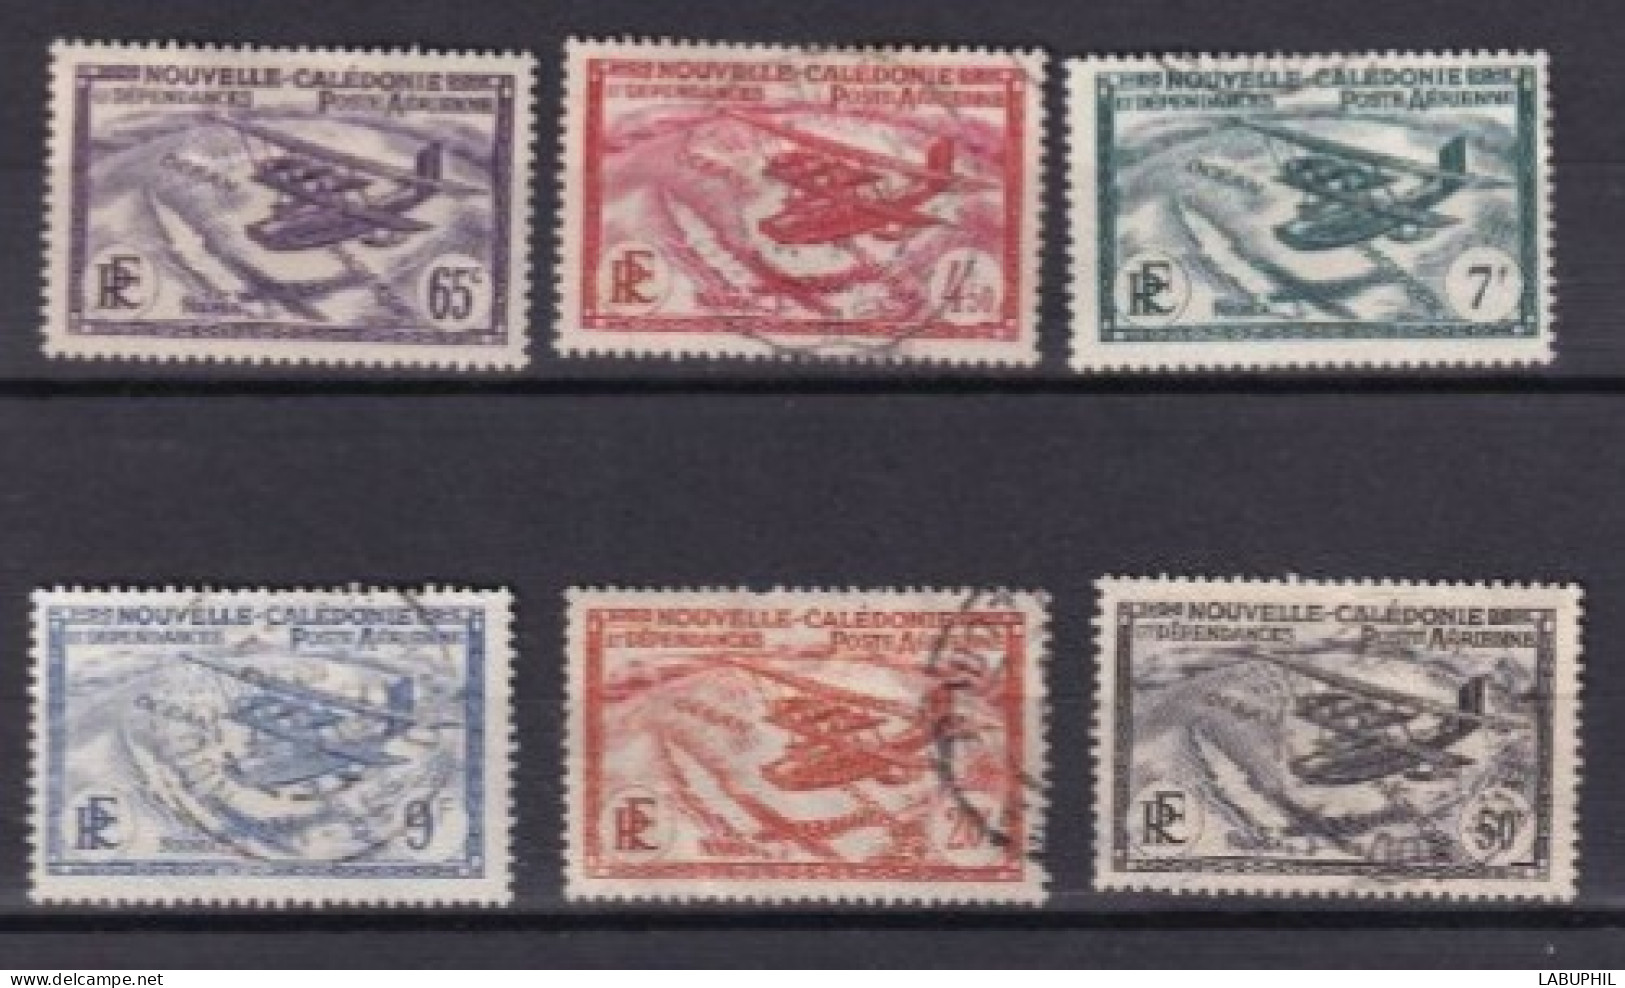 NOUVELLE CALEDONIE Dispersion D'une Collection Oblitéré Used  1938 - Oblitérés